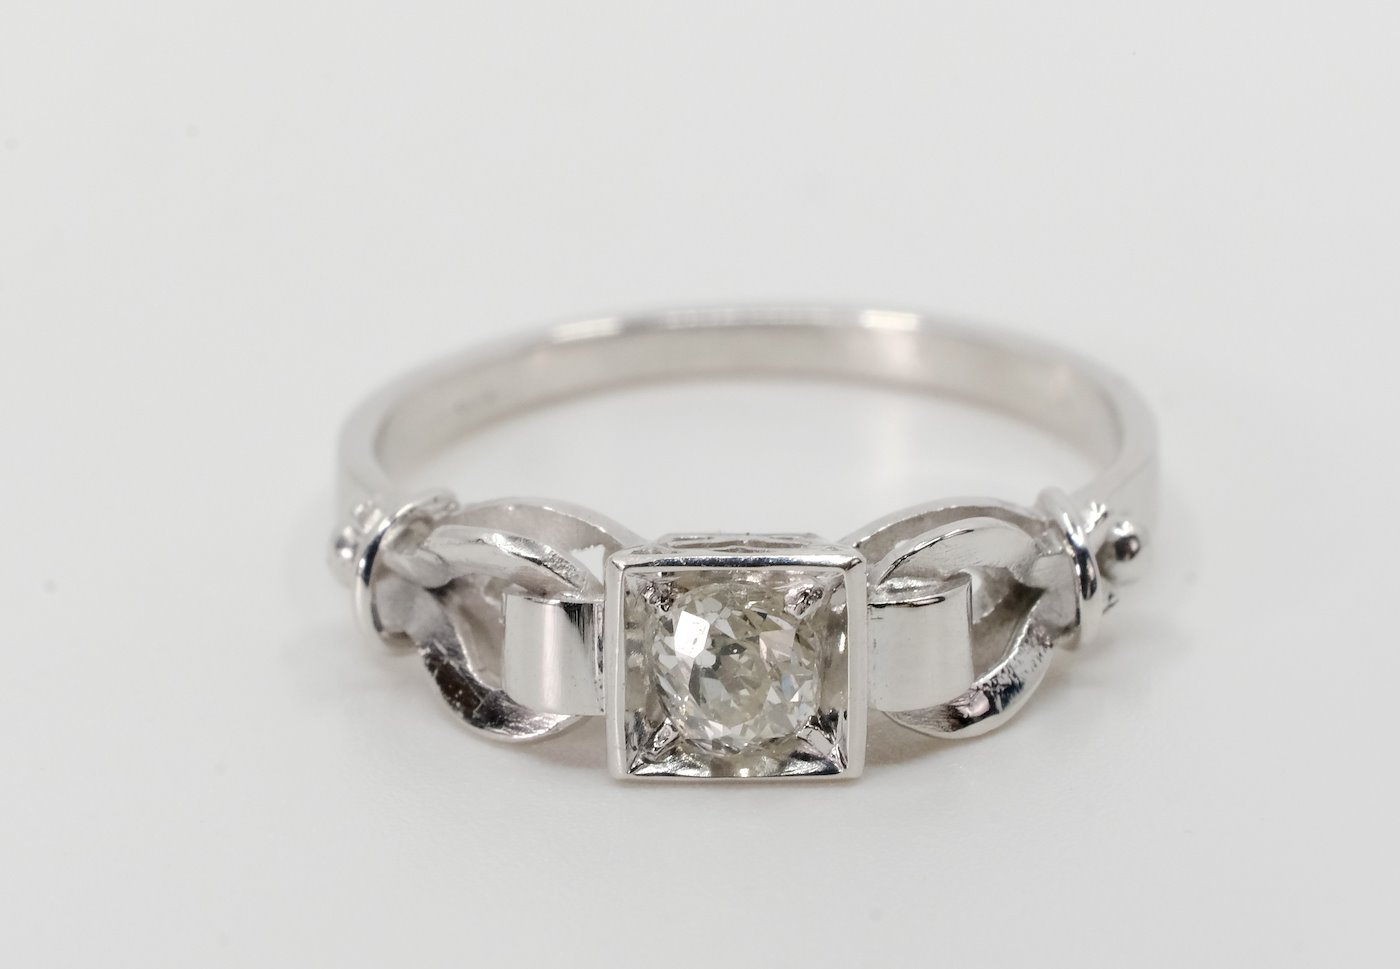 .. - Briliantový dámský prsten, bílé zlato 585/1000, značeno platným puncem Z-58, hrubá hmotnost 2,43 g